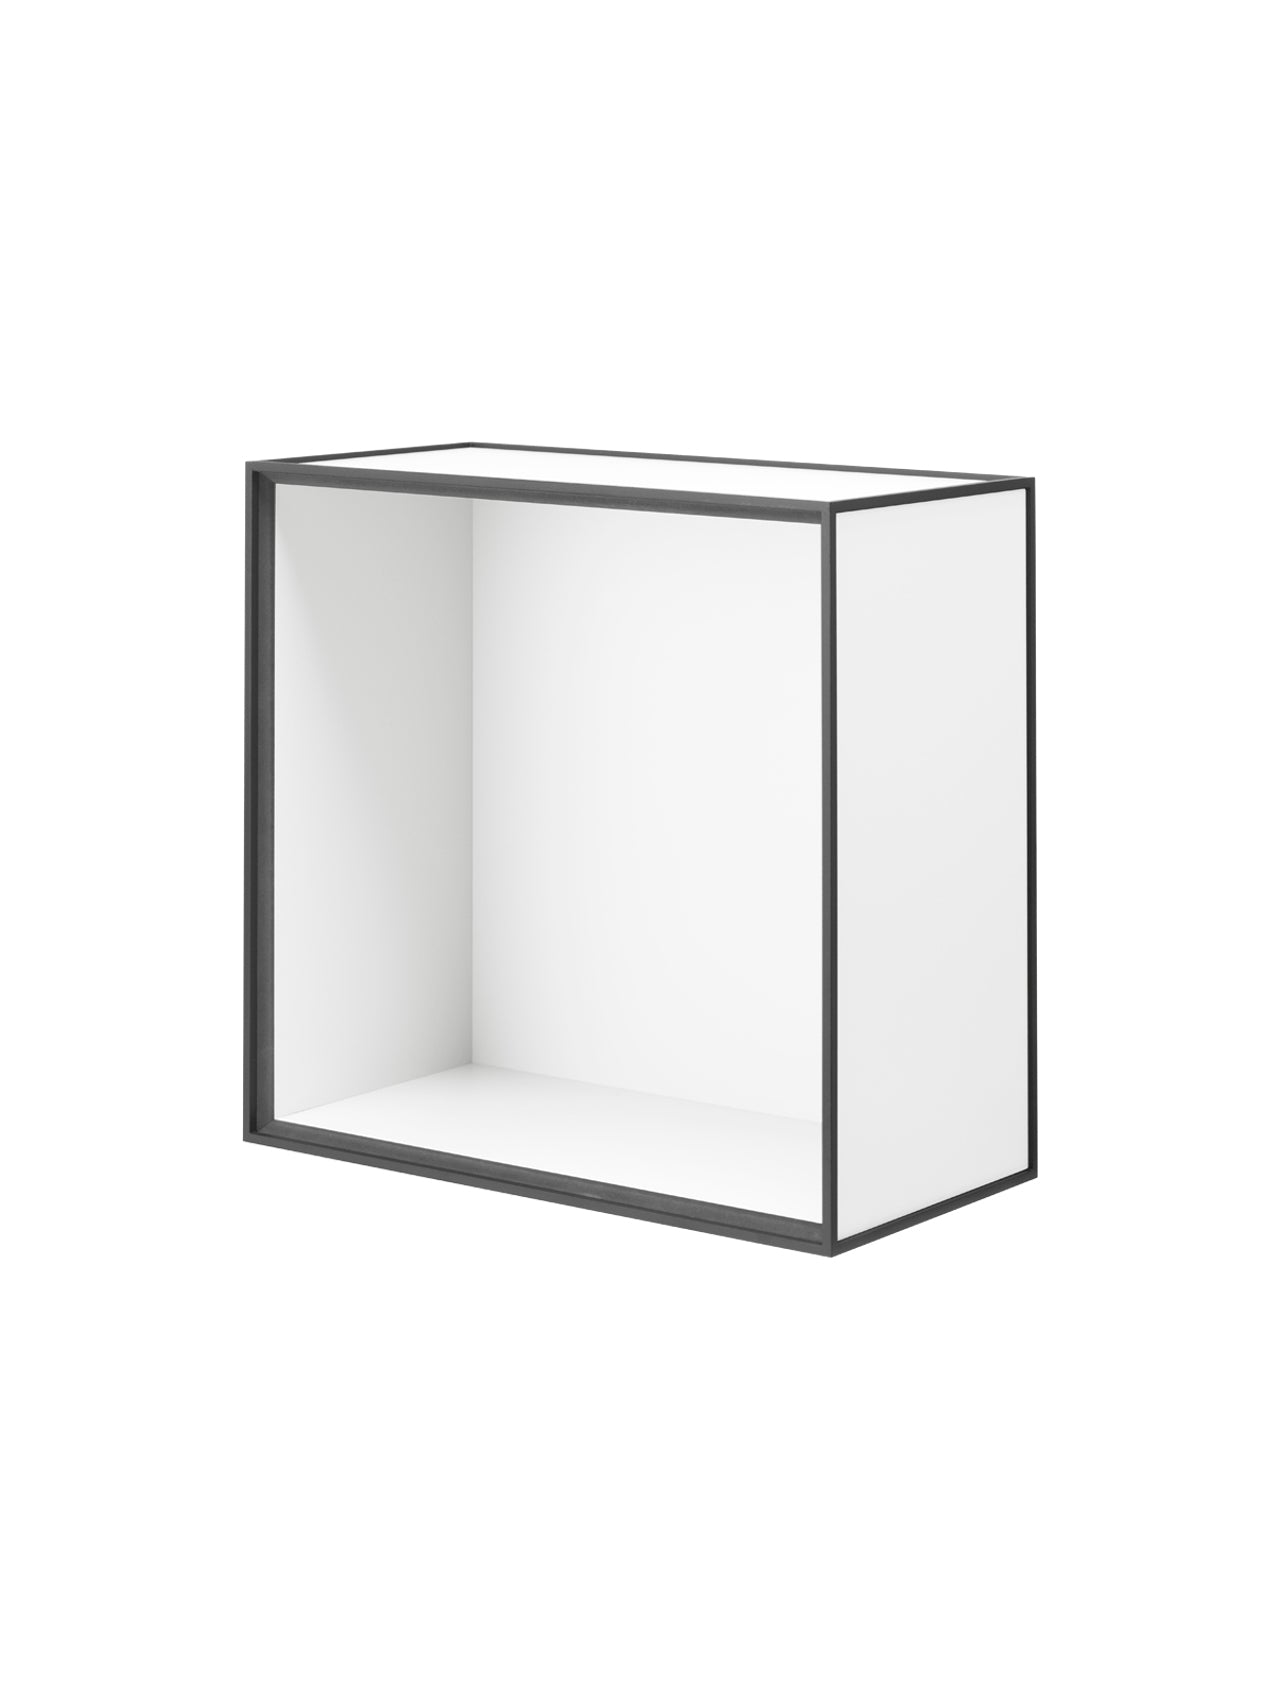 Large Open Frame-Table Frame-MENU Design Shop